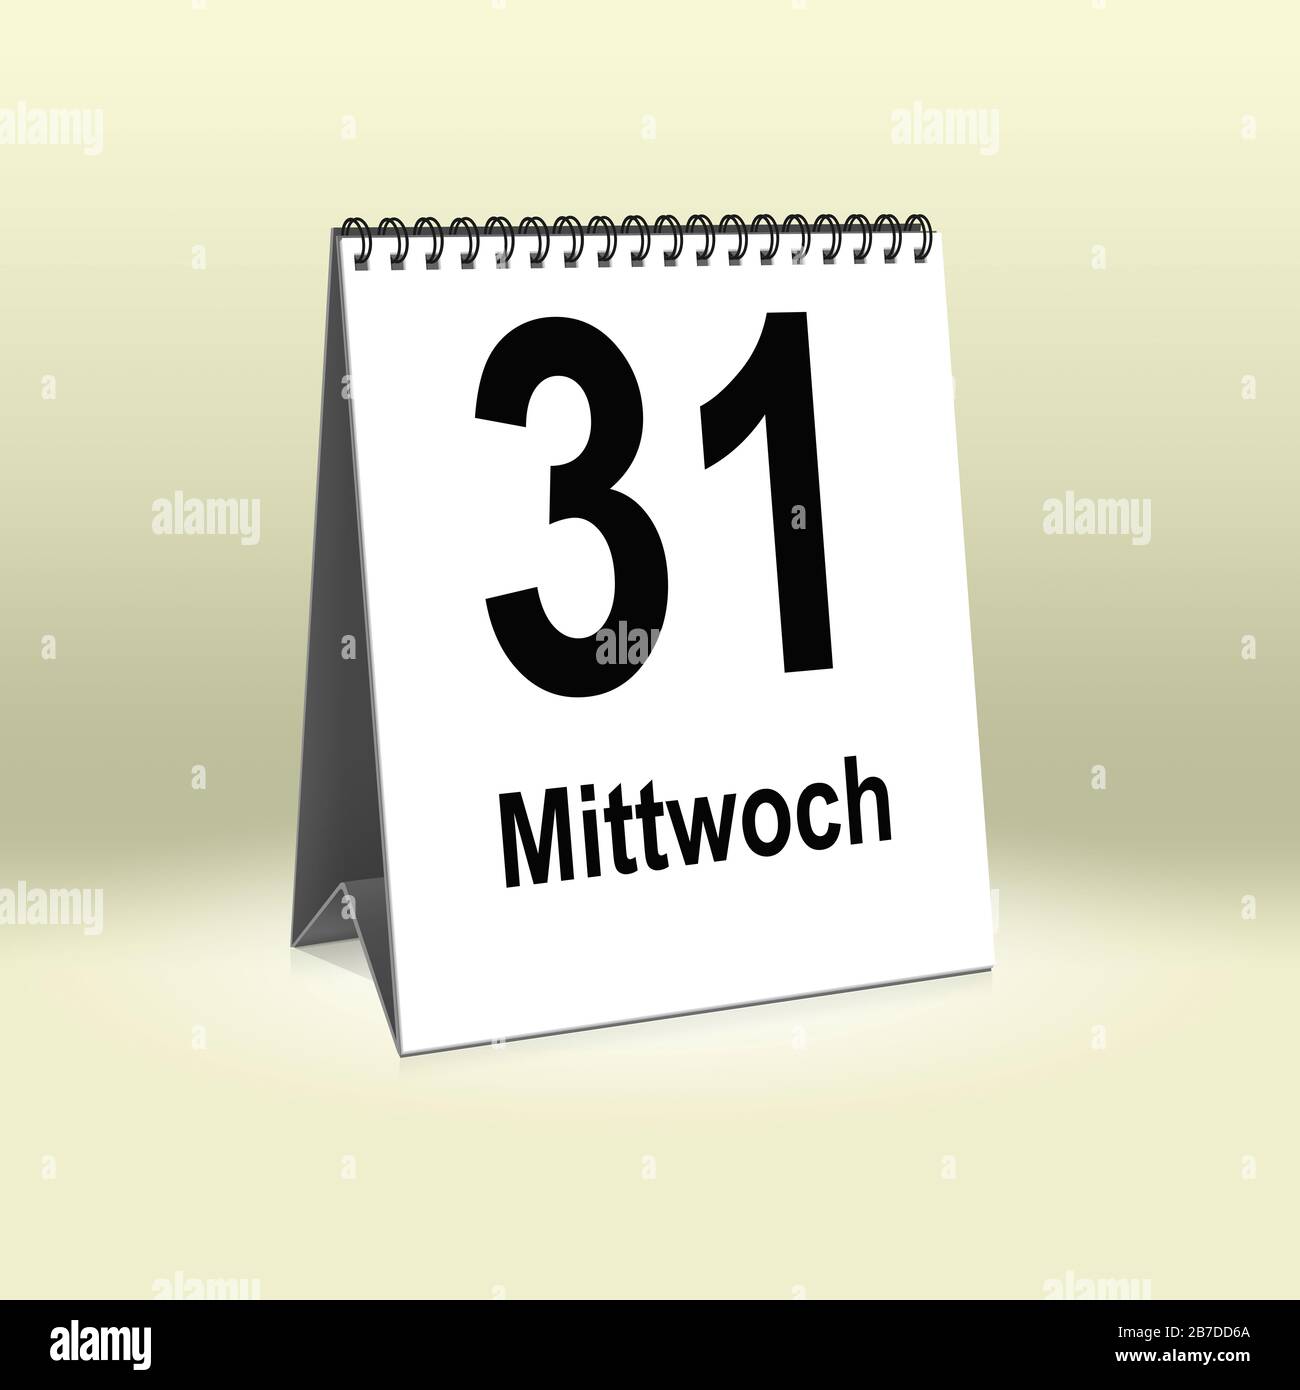 A calendar in German language shows Wednesday 31th | Ein Kalender für den Schreibtisch zeigt Mittwoch 31. Stock Photo